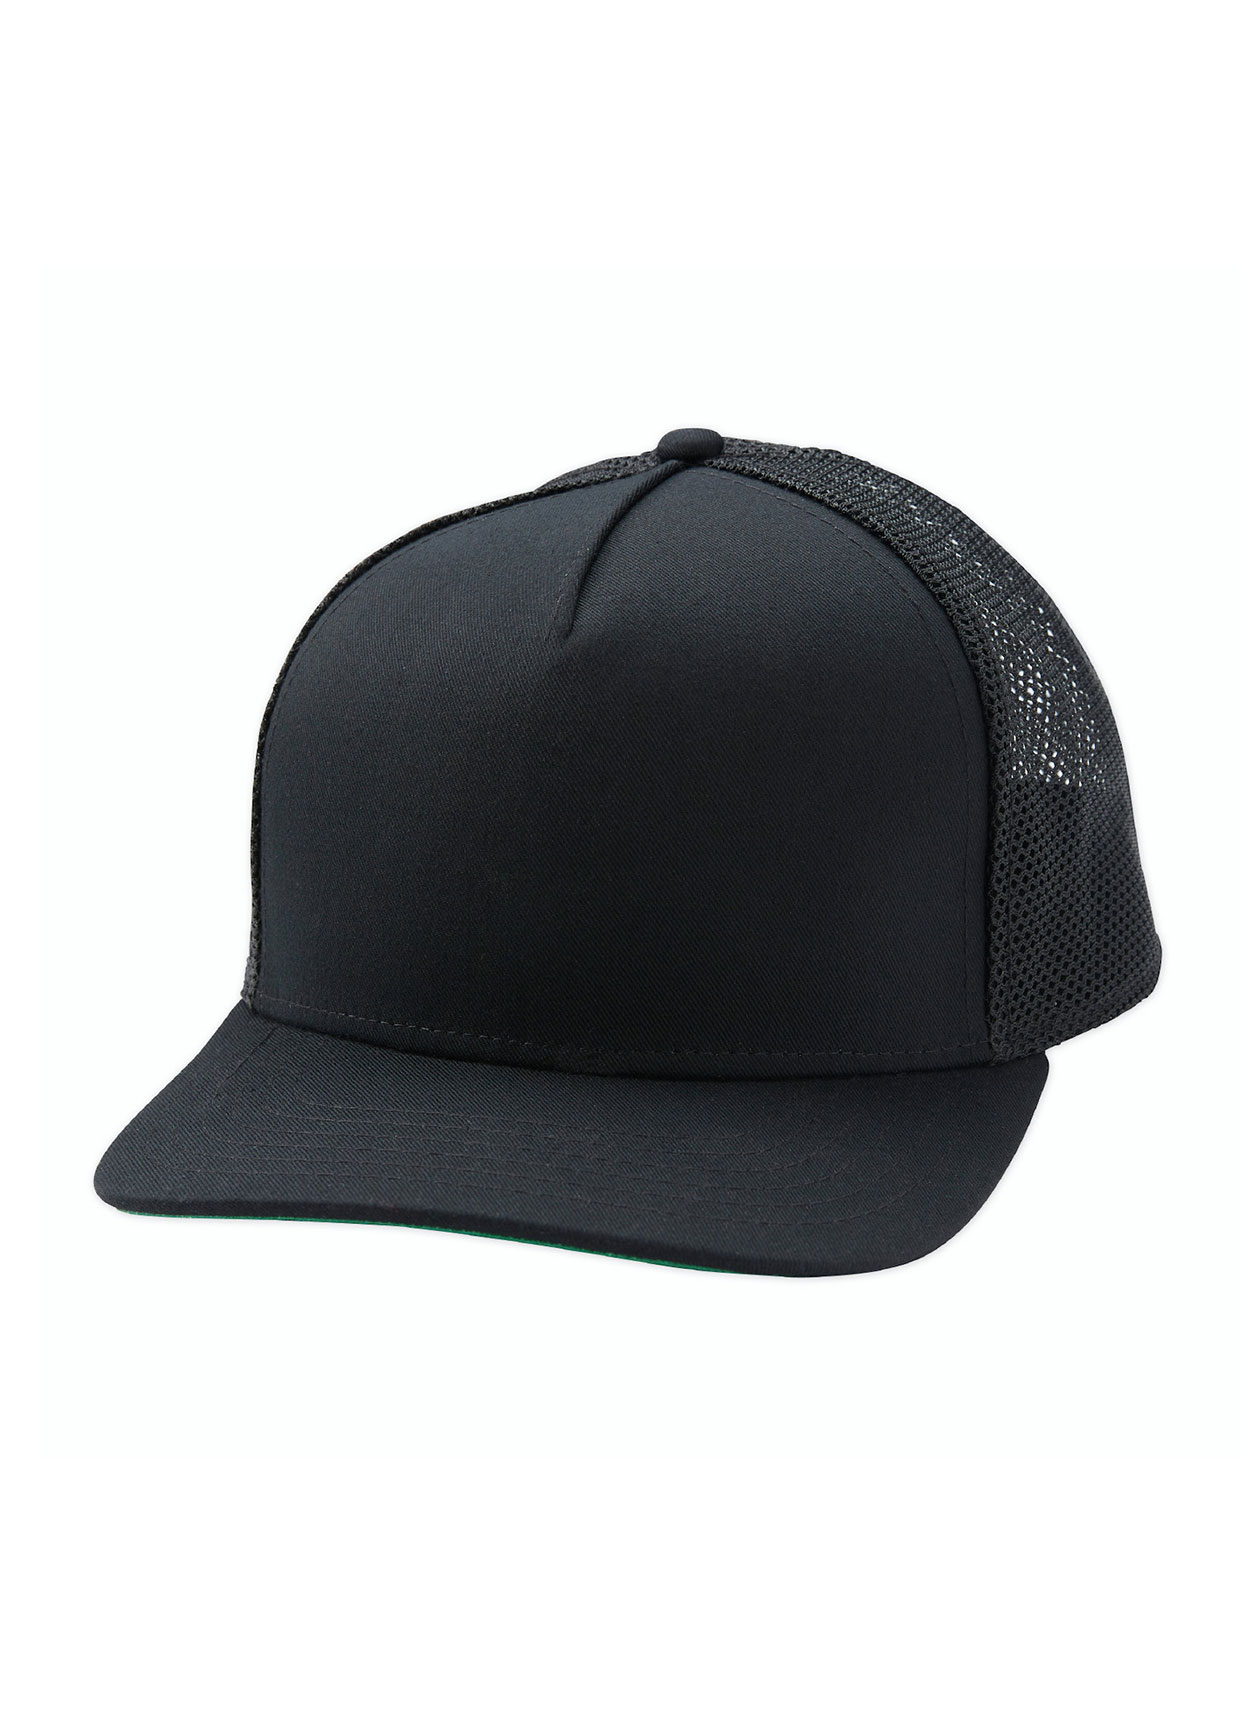 Linksoul Black Men's Trucker Hat